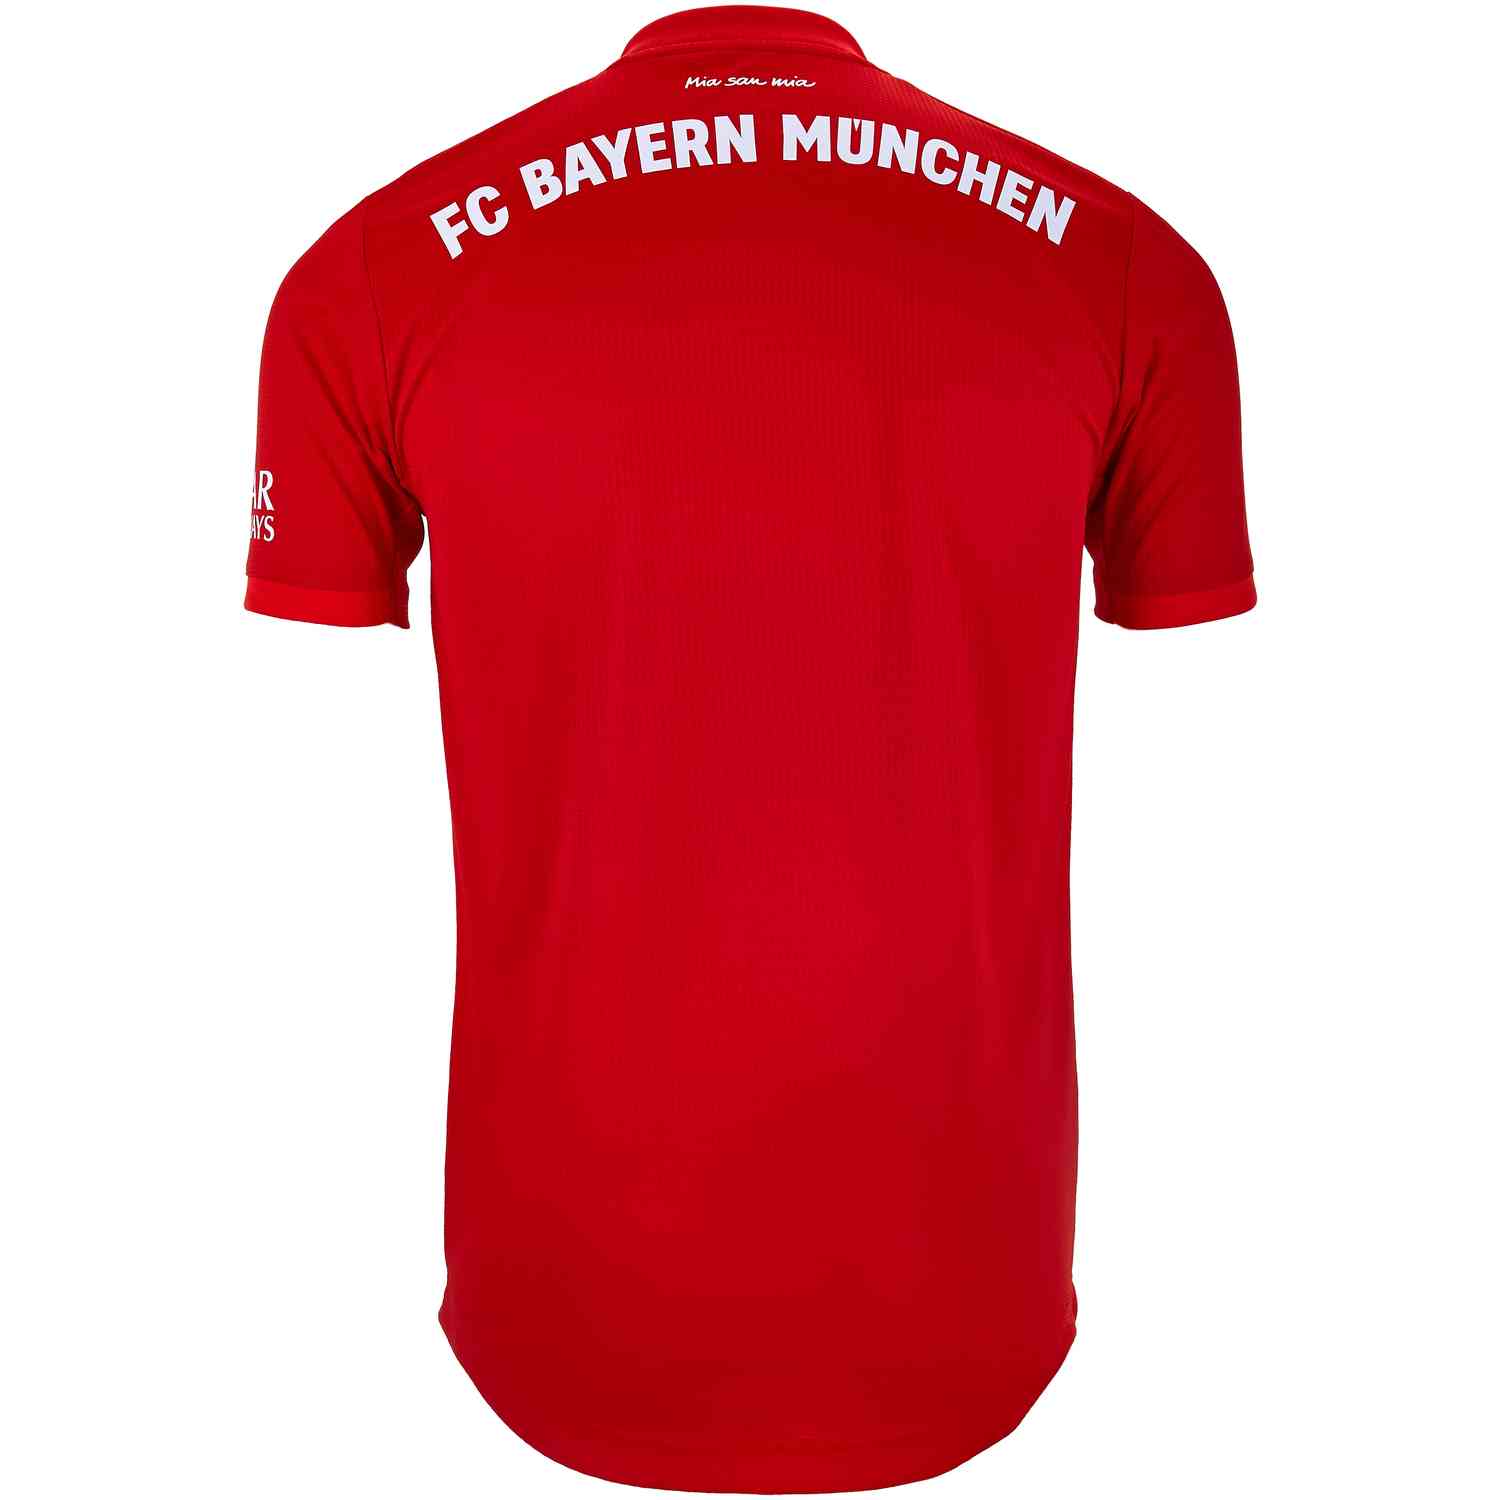 2019/20 adidas Bayern Munich Home Authentic Jersey - SoccerPro